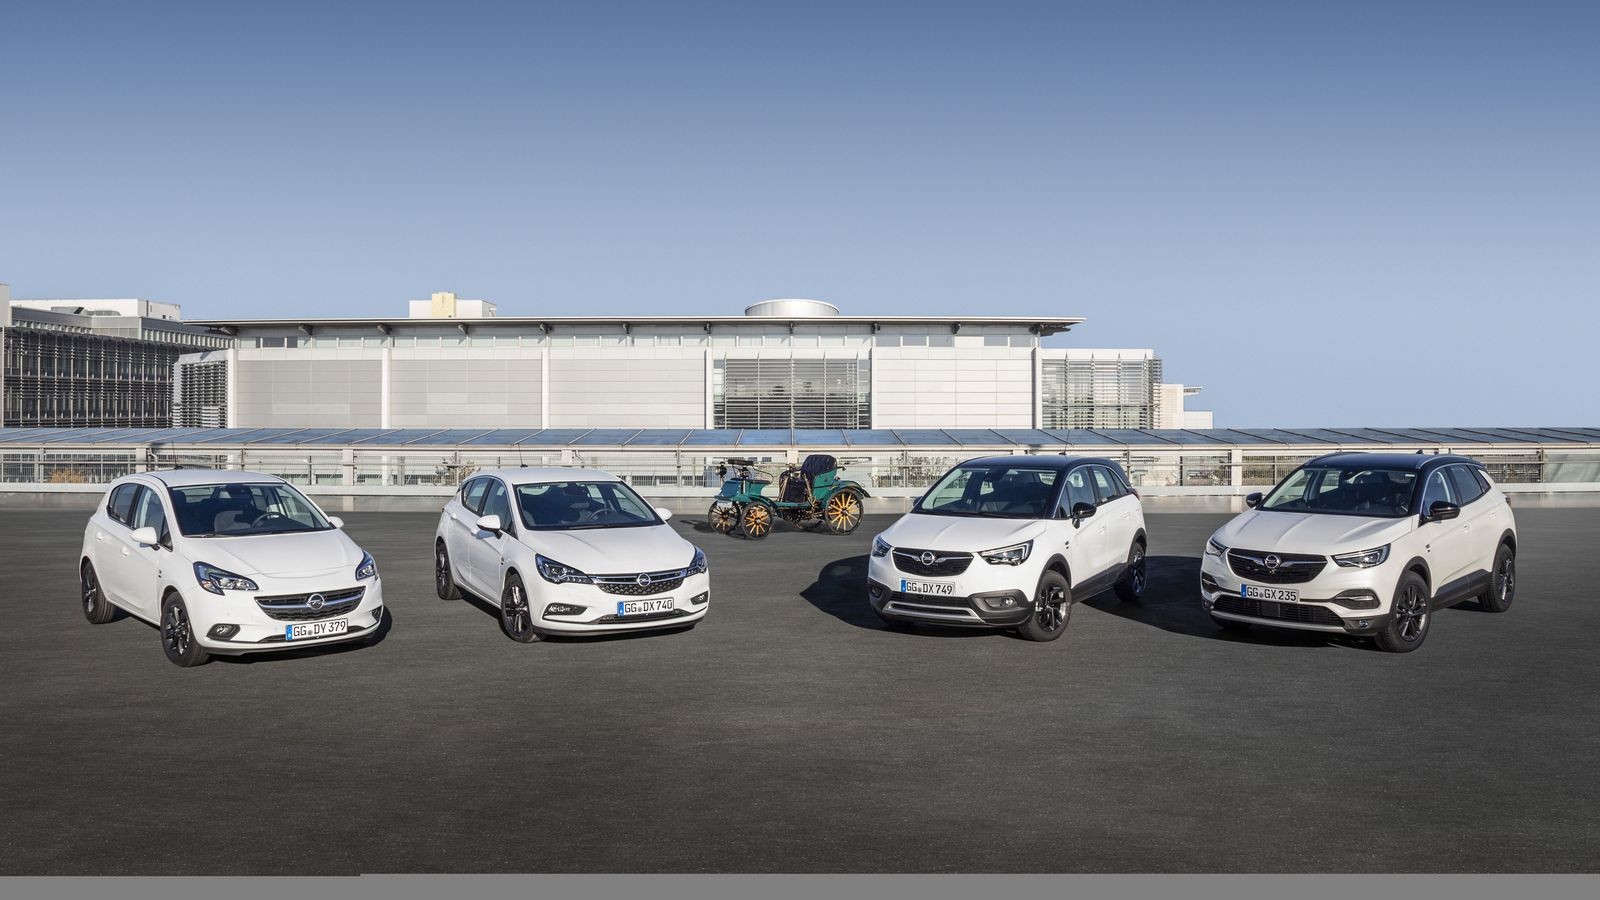 Юбилейные модели Opel на фоне прародителя, патентованного автомобиля системы Лутцманна.